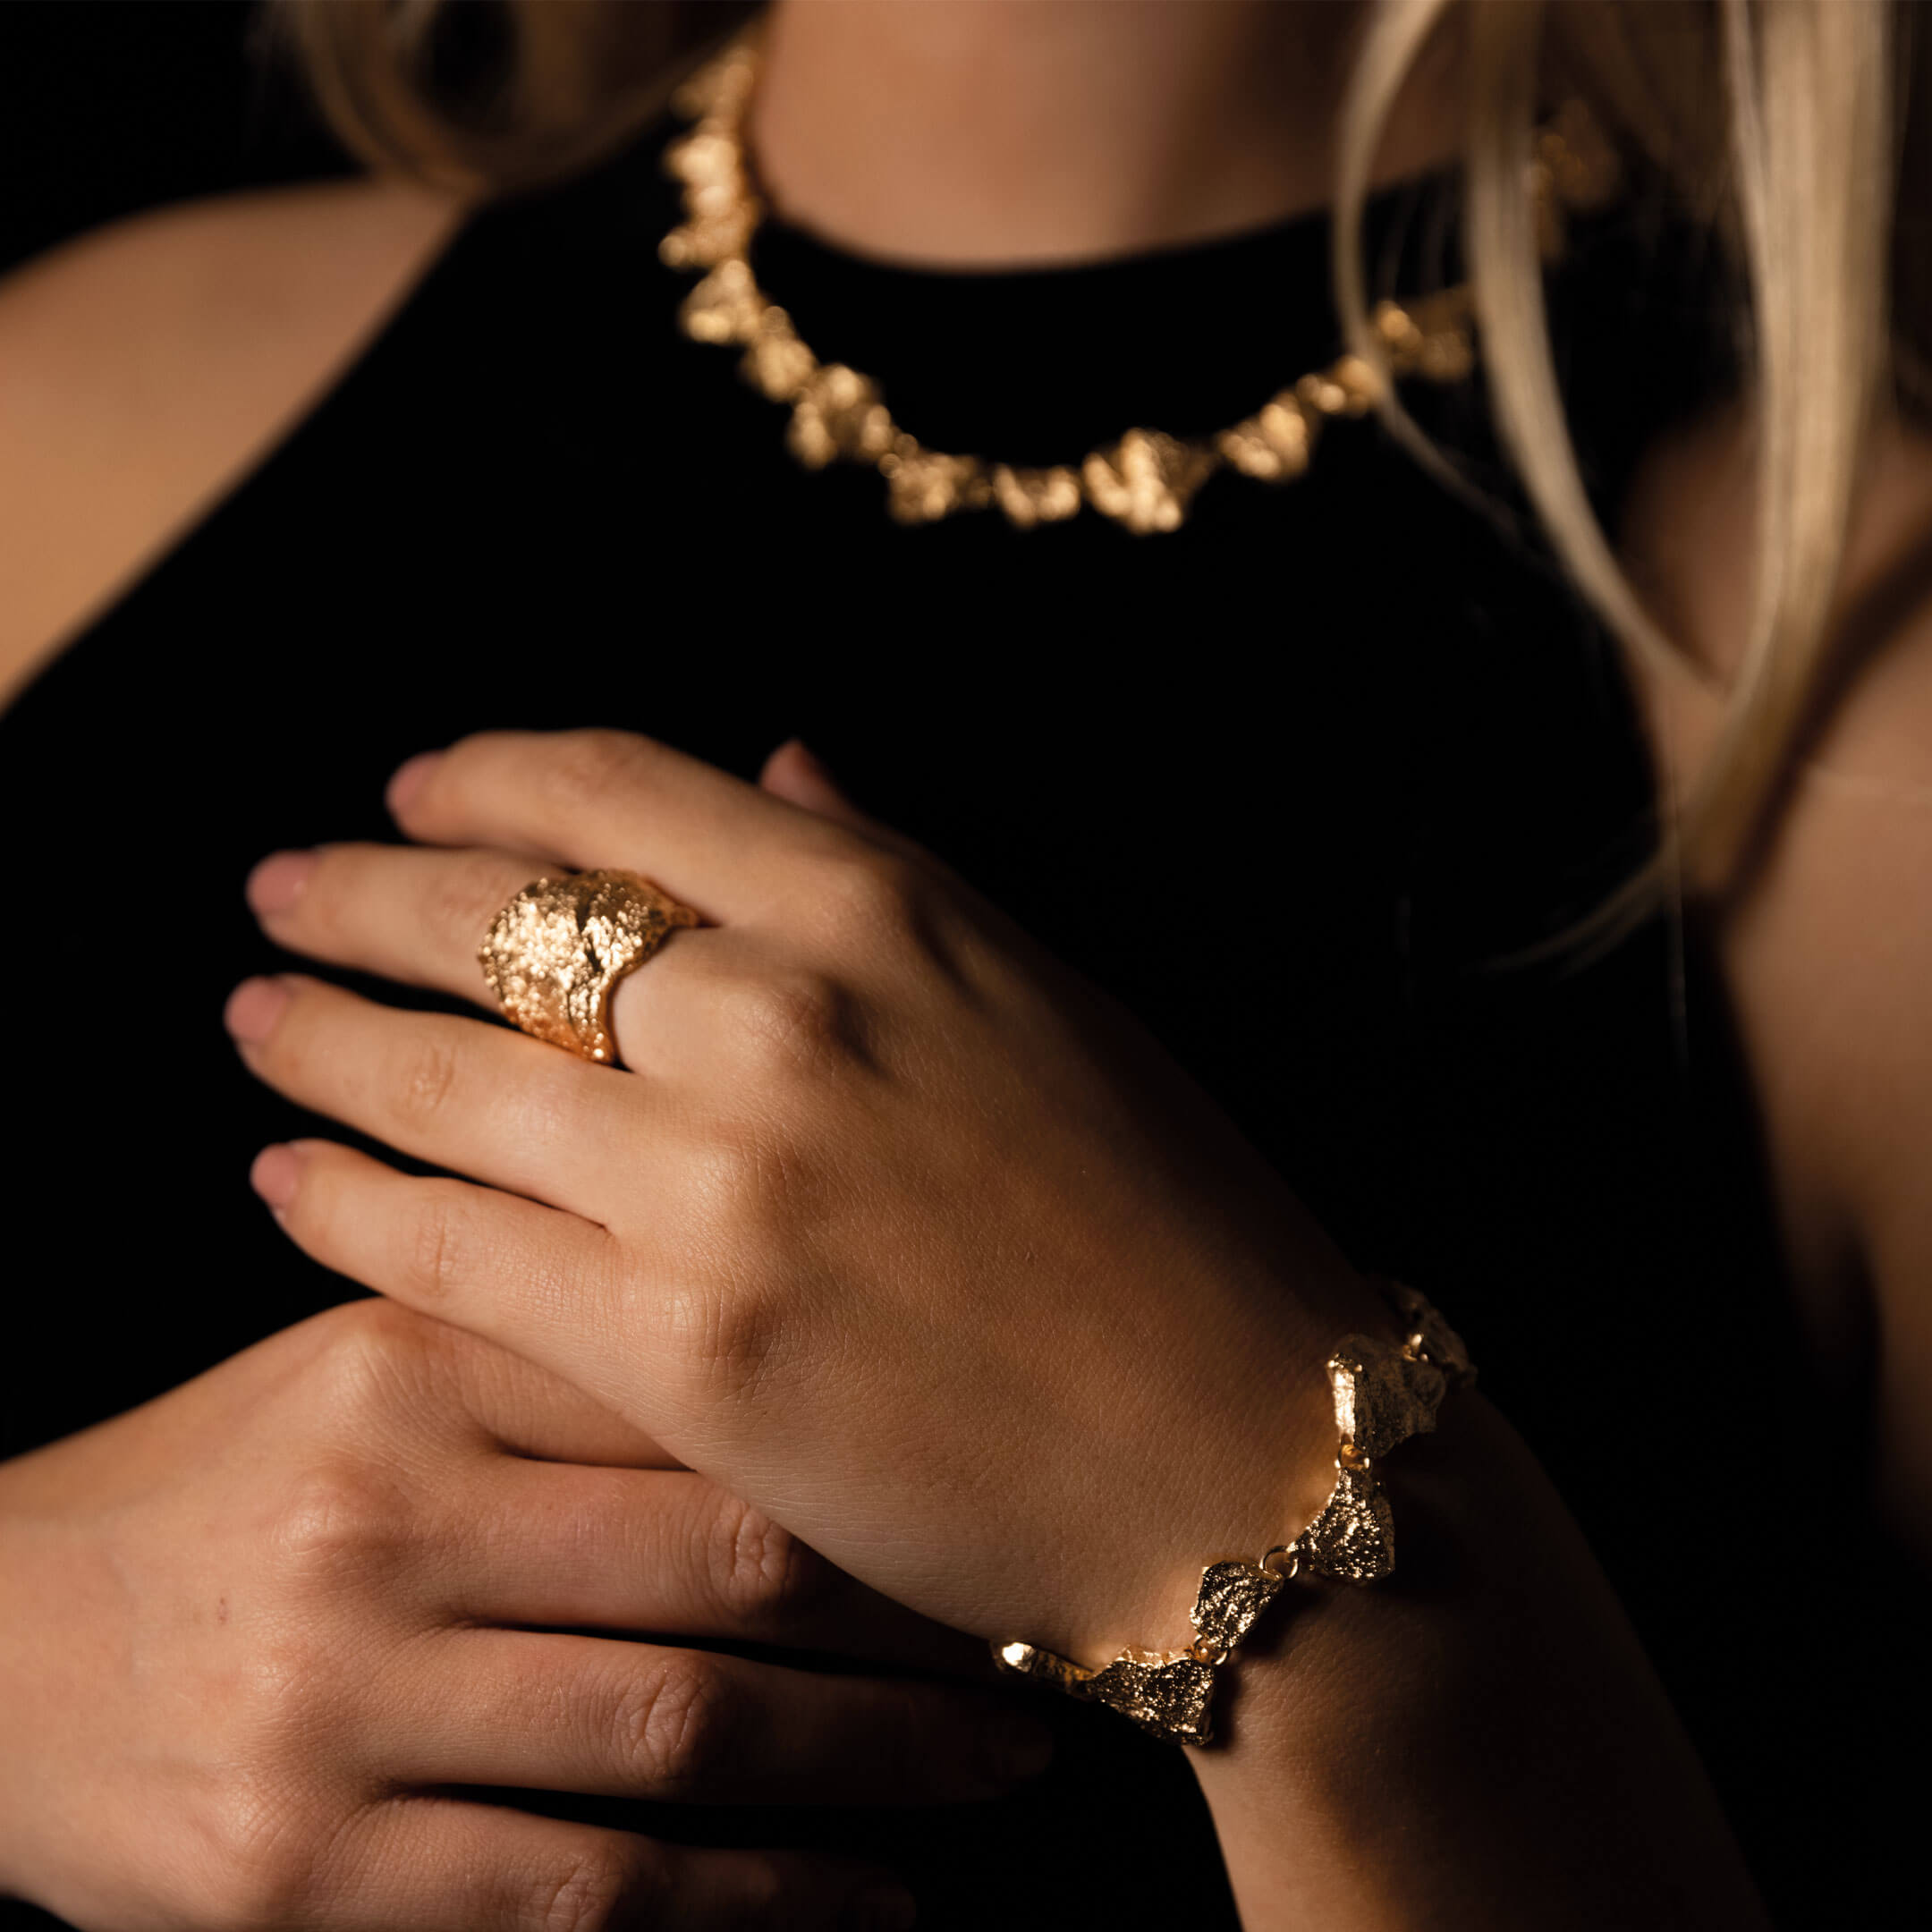 Stone-shaped gold bracelet, 18kt